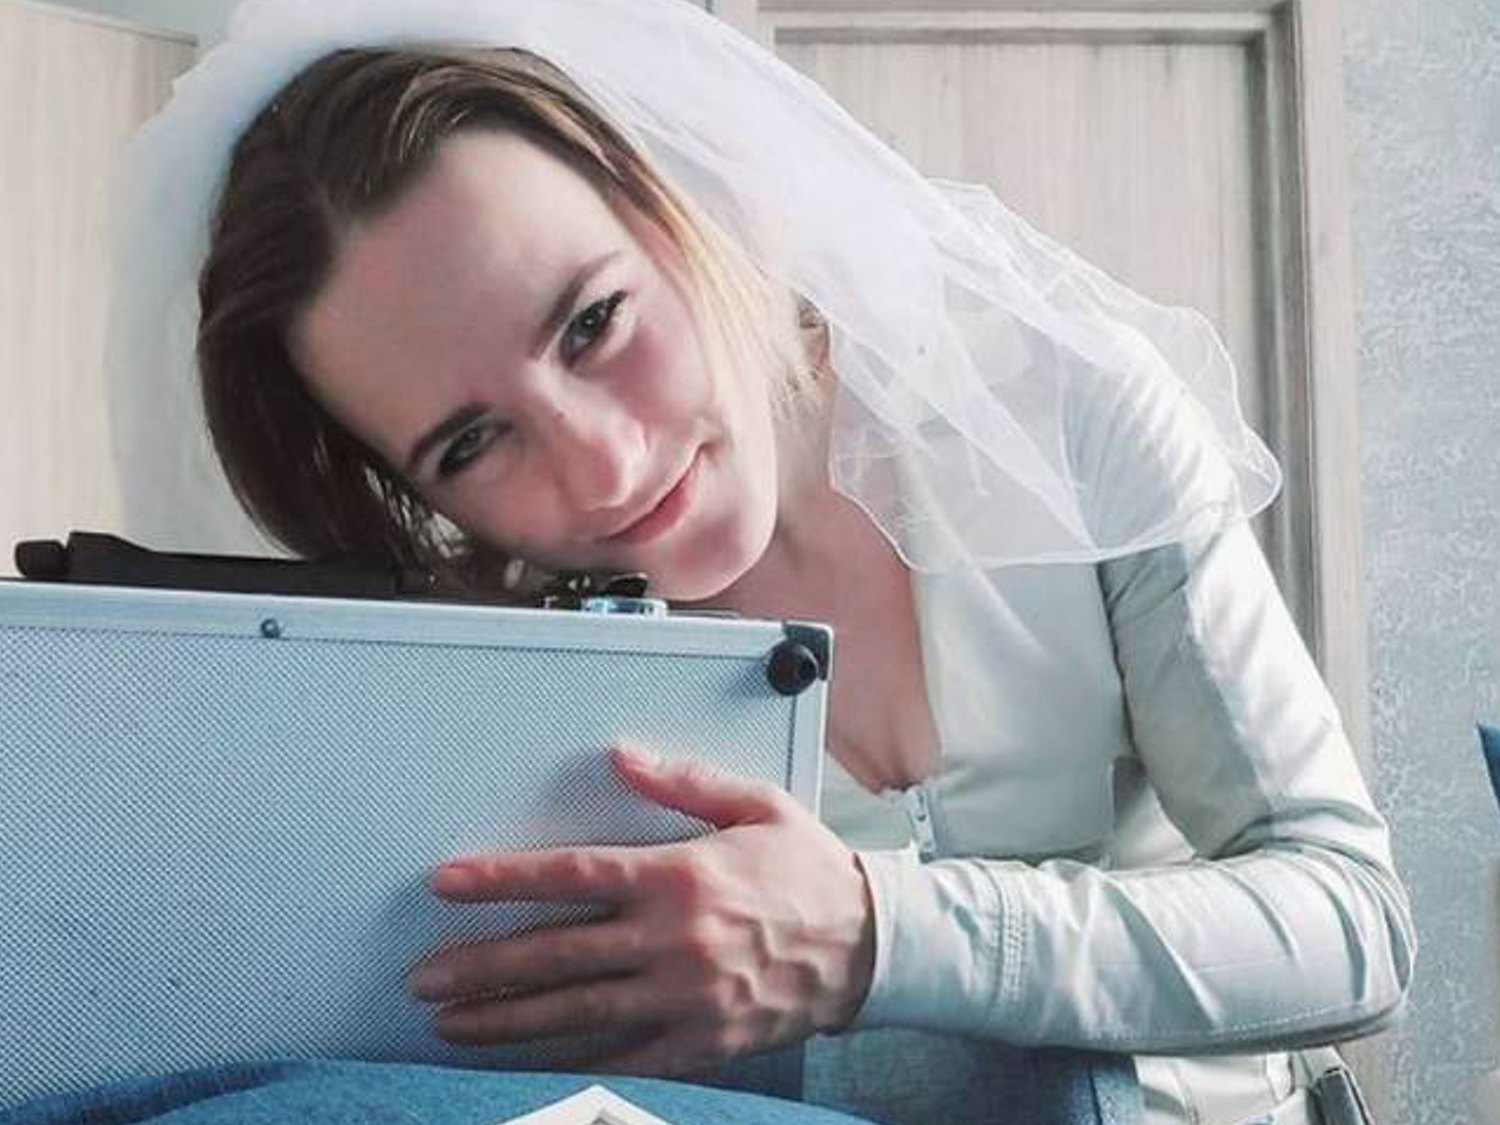 Una mujer de 24 años se casa con un maletín: "Estoy enamorada de él"